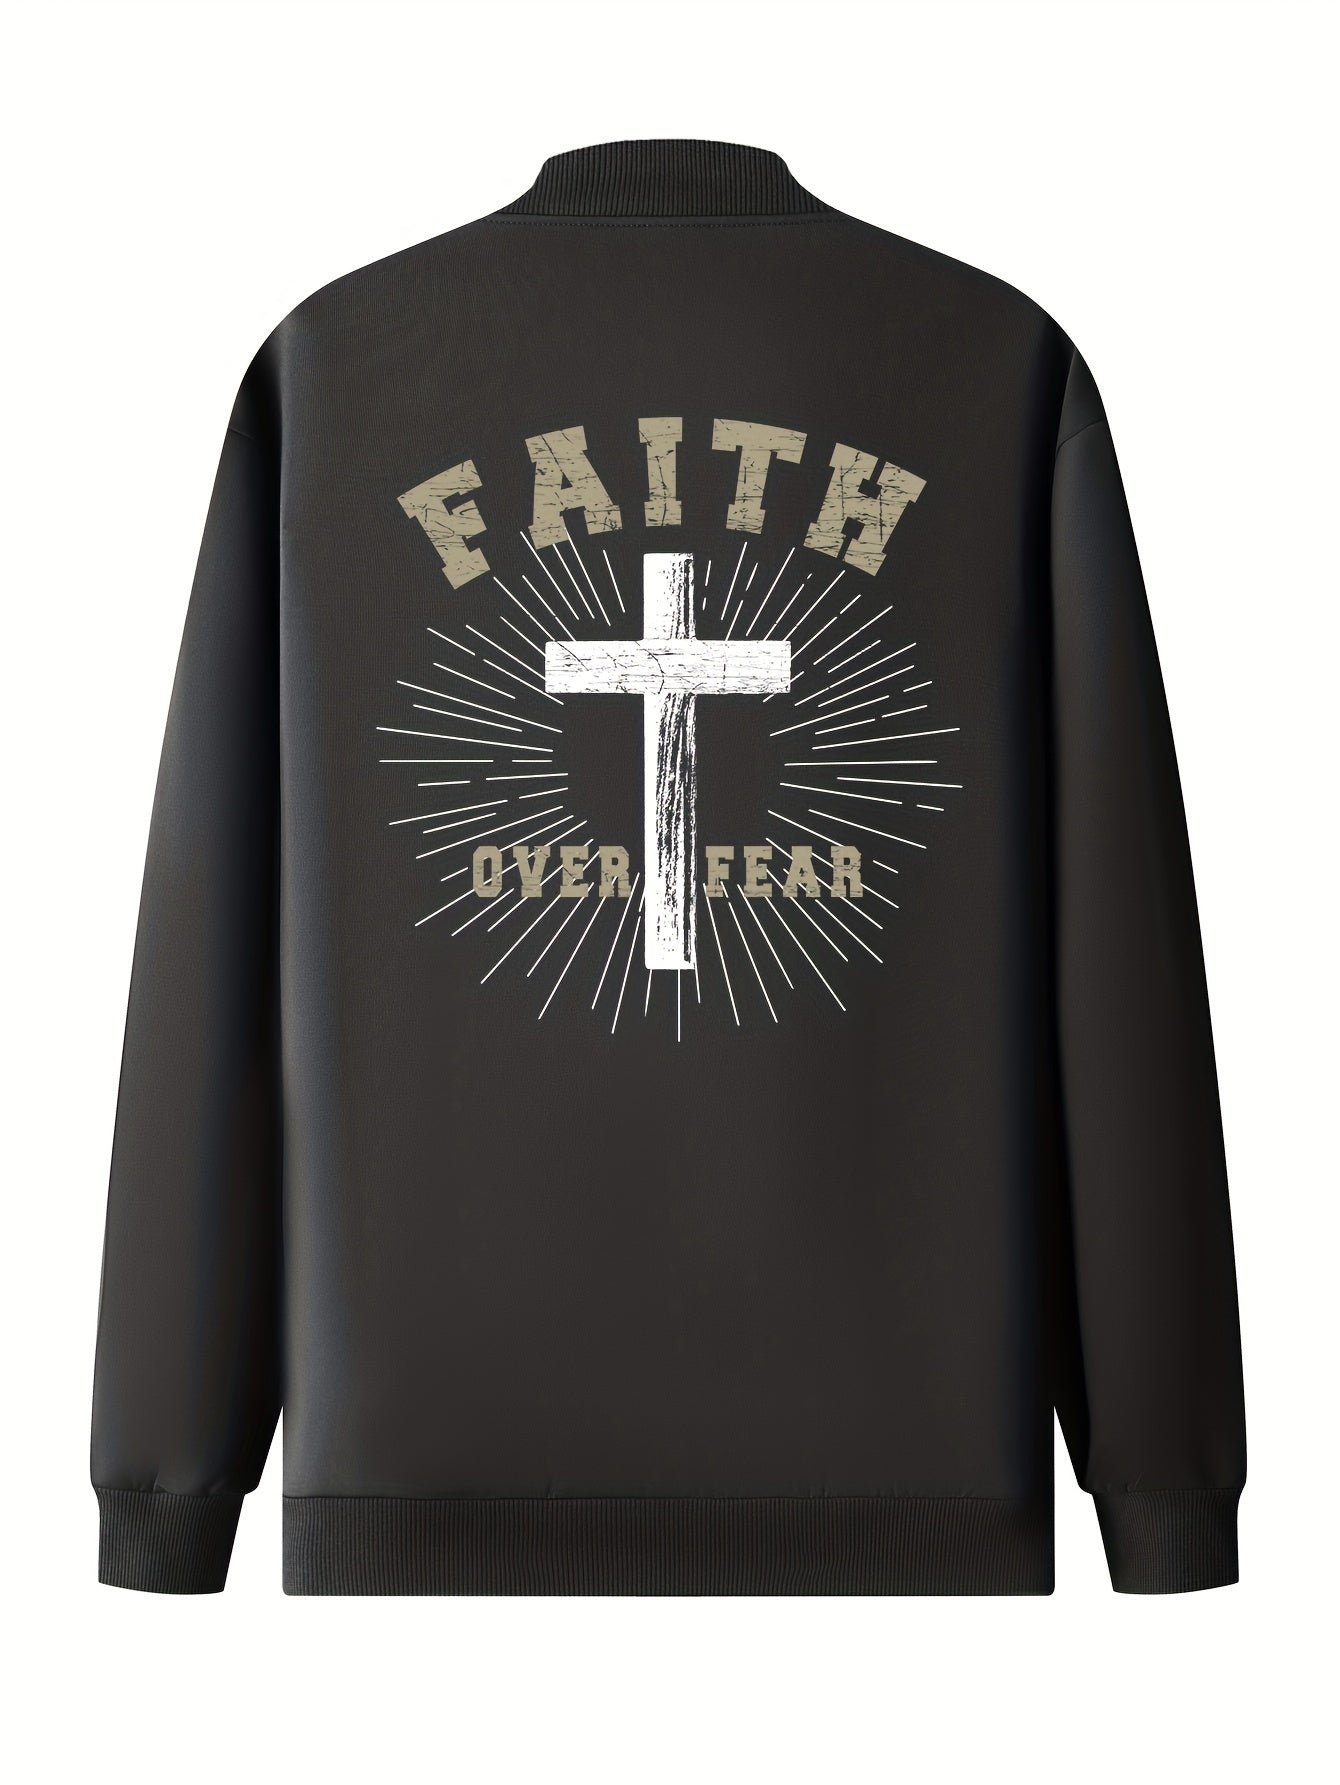 Faith Over Fear Men's Christian Jacket claimedbygoddesigns